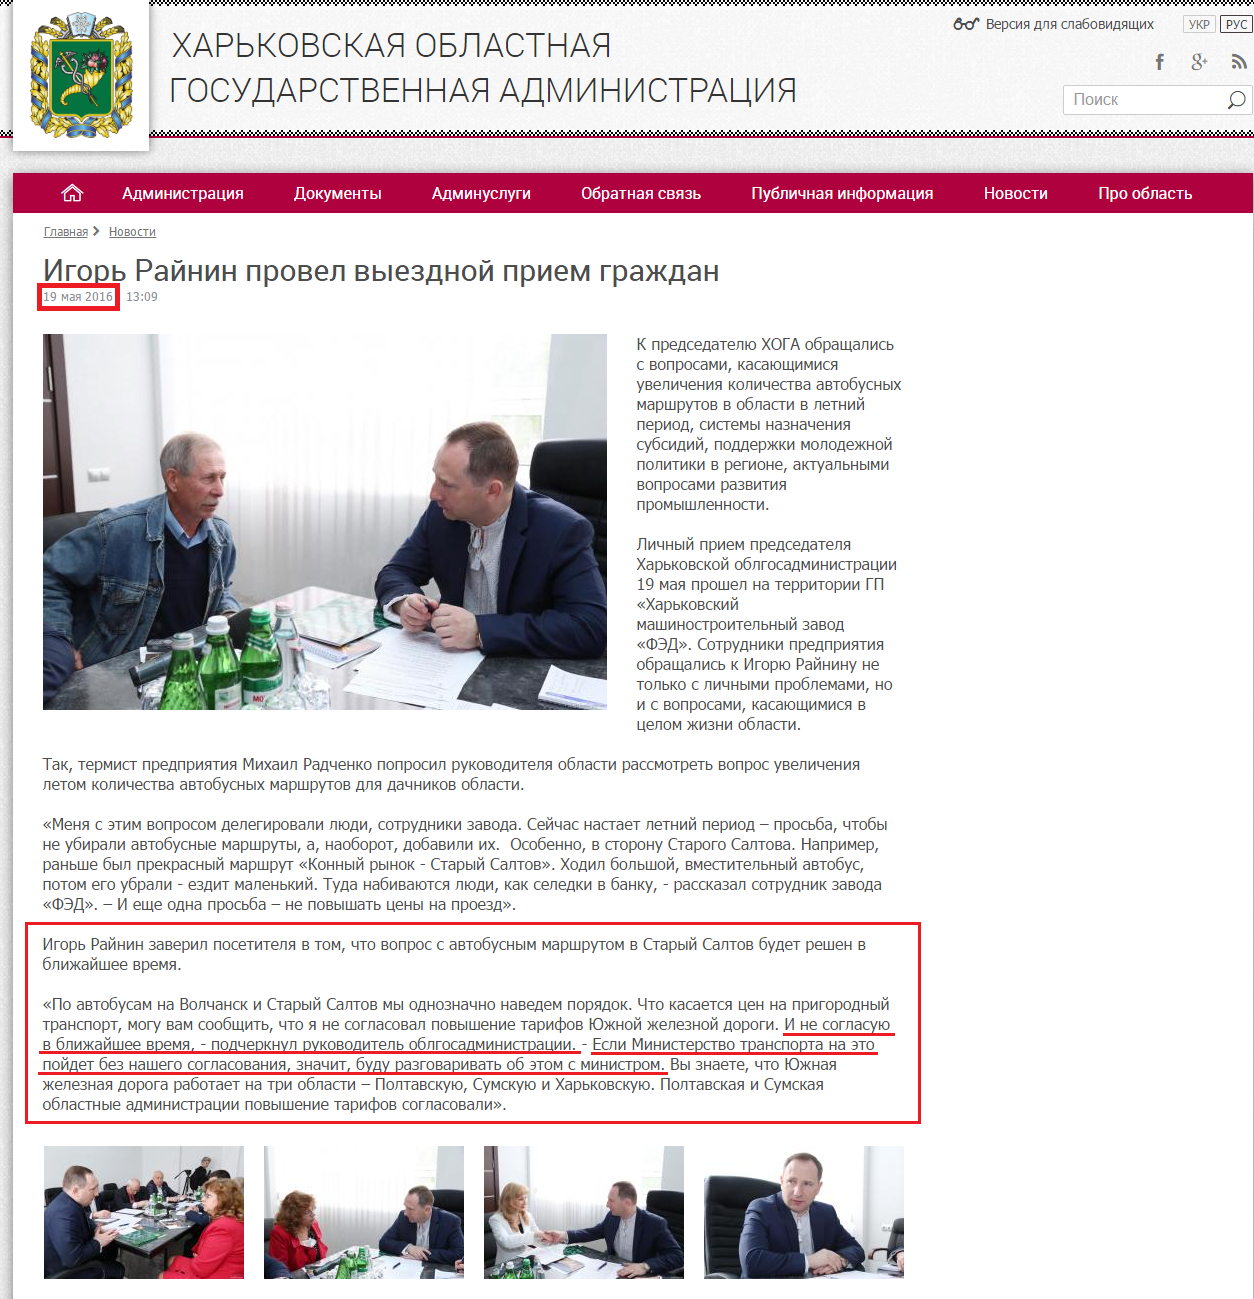 http://kharkivoda.gov.ua/ru/news/80863